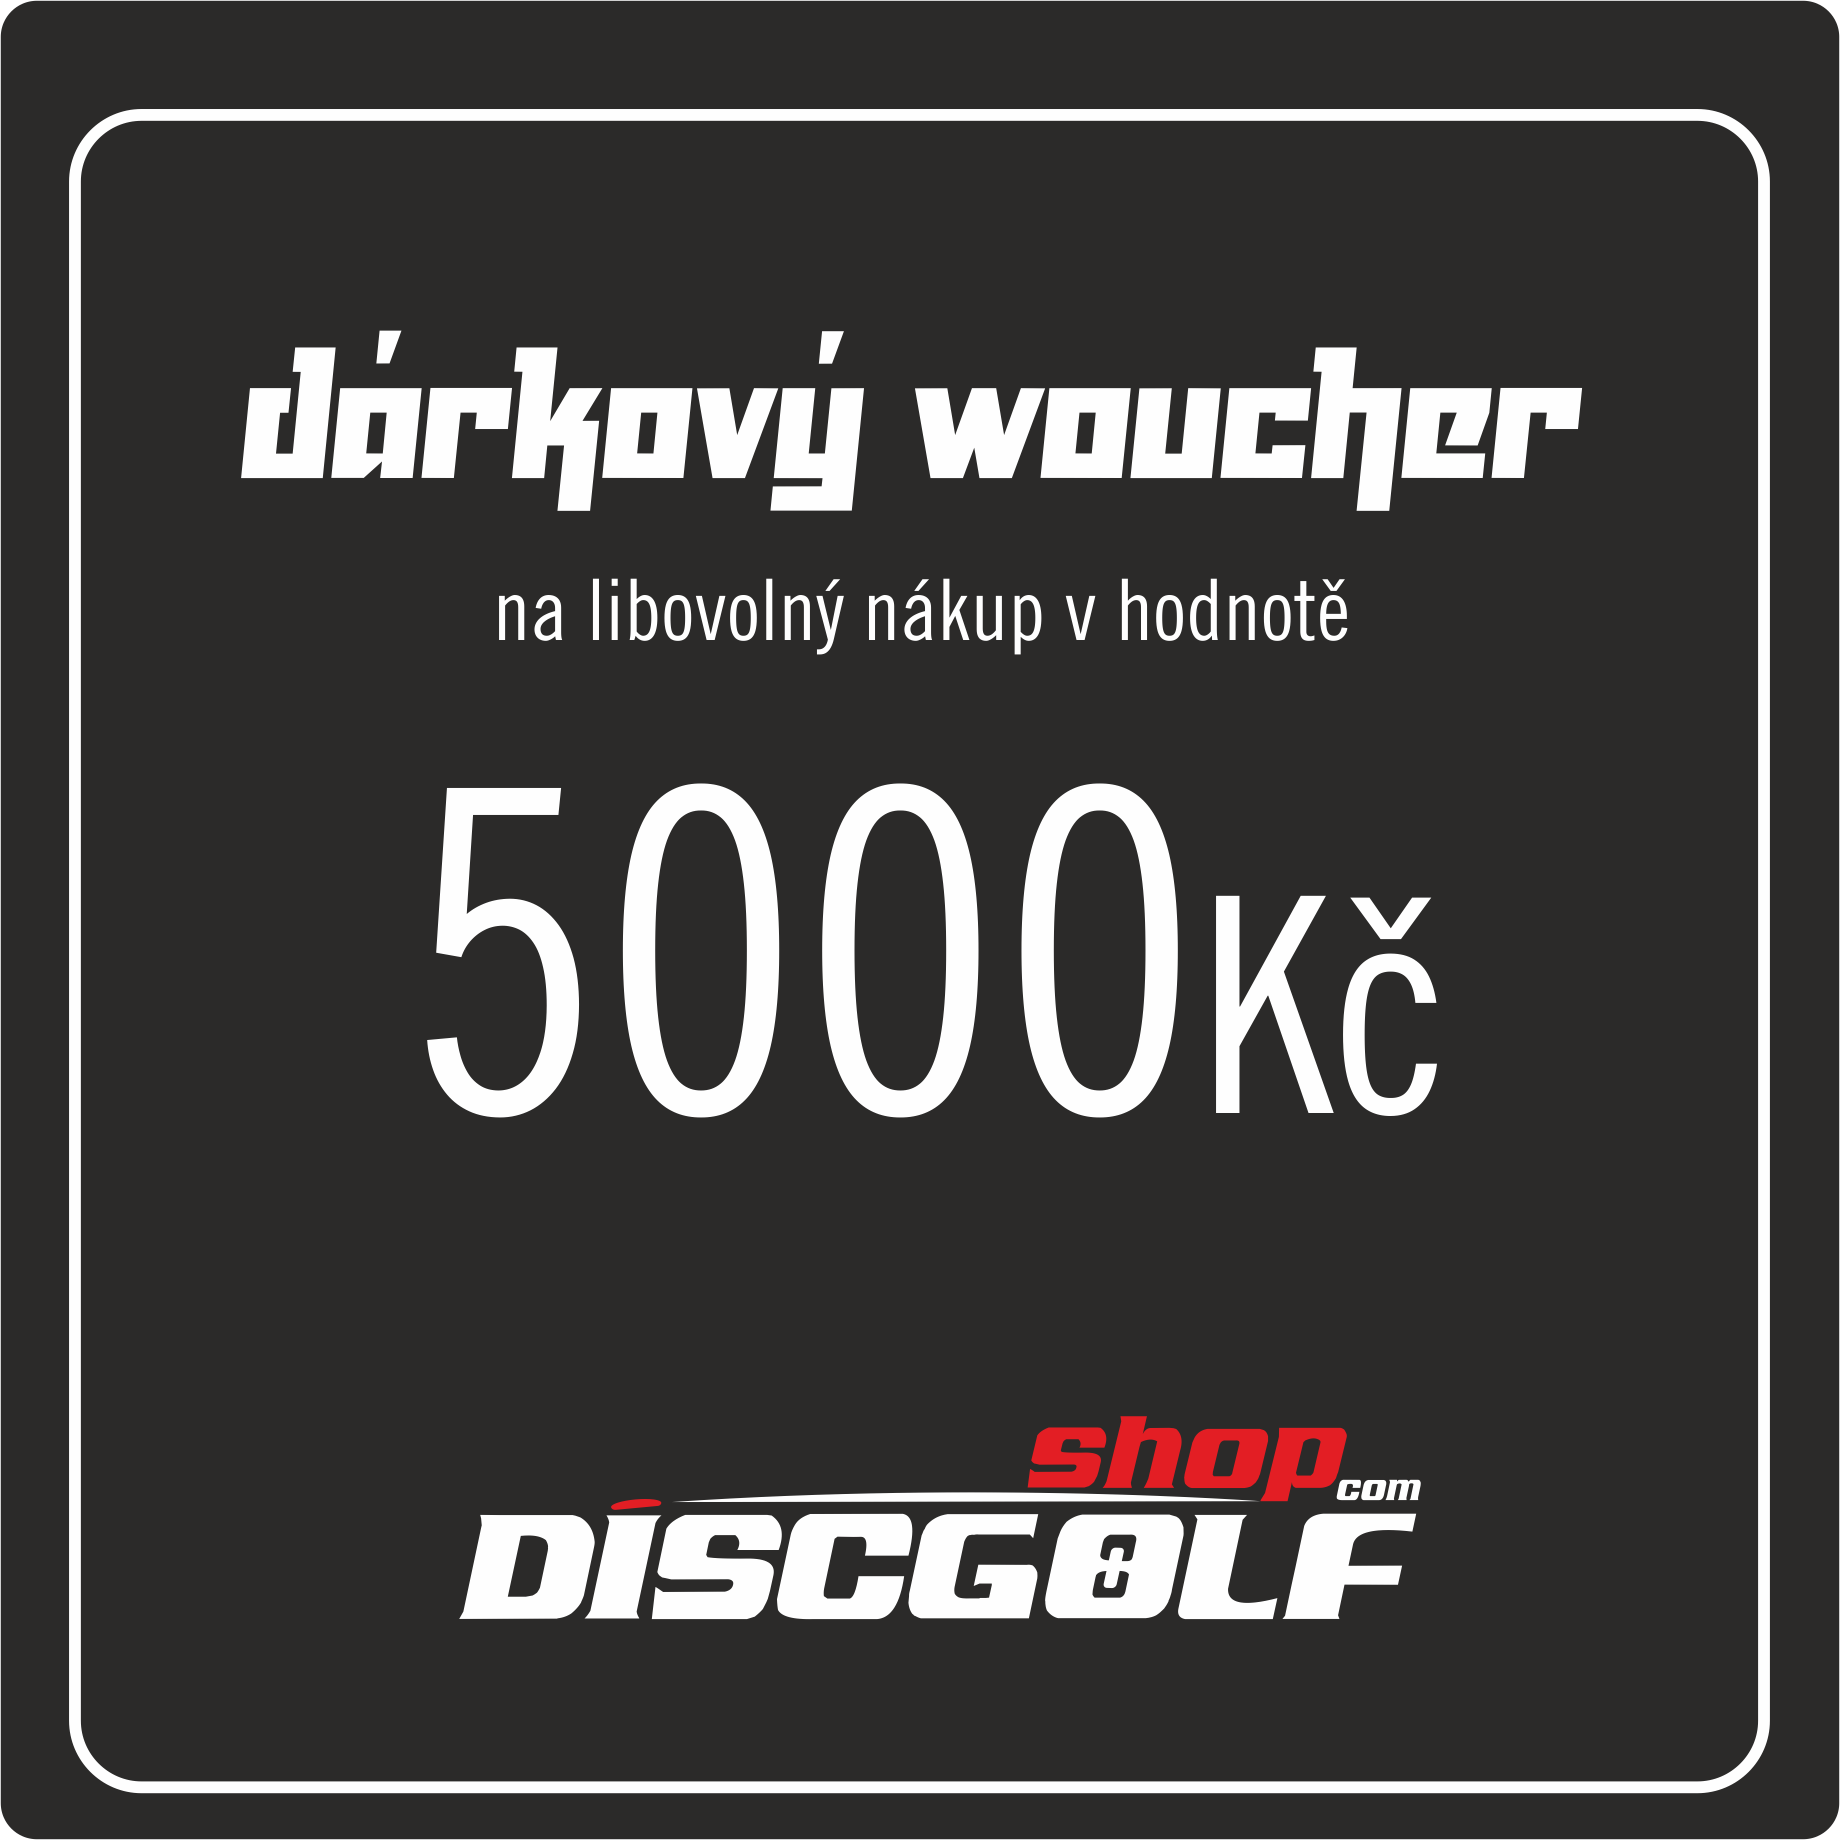 Dárkový woucher- kupon 5000Kč (discgolf)